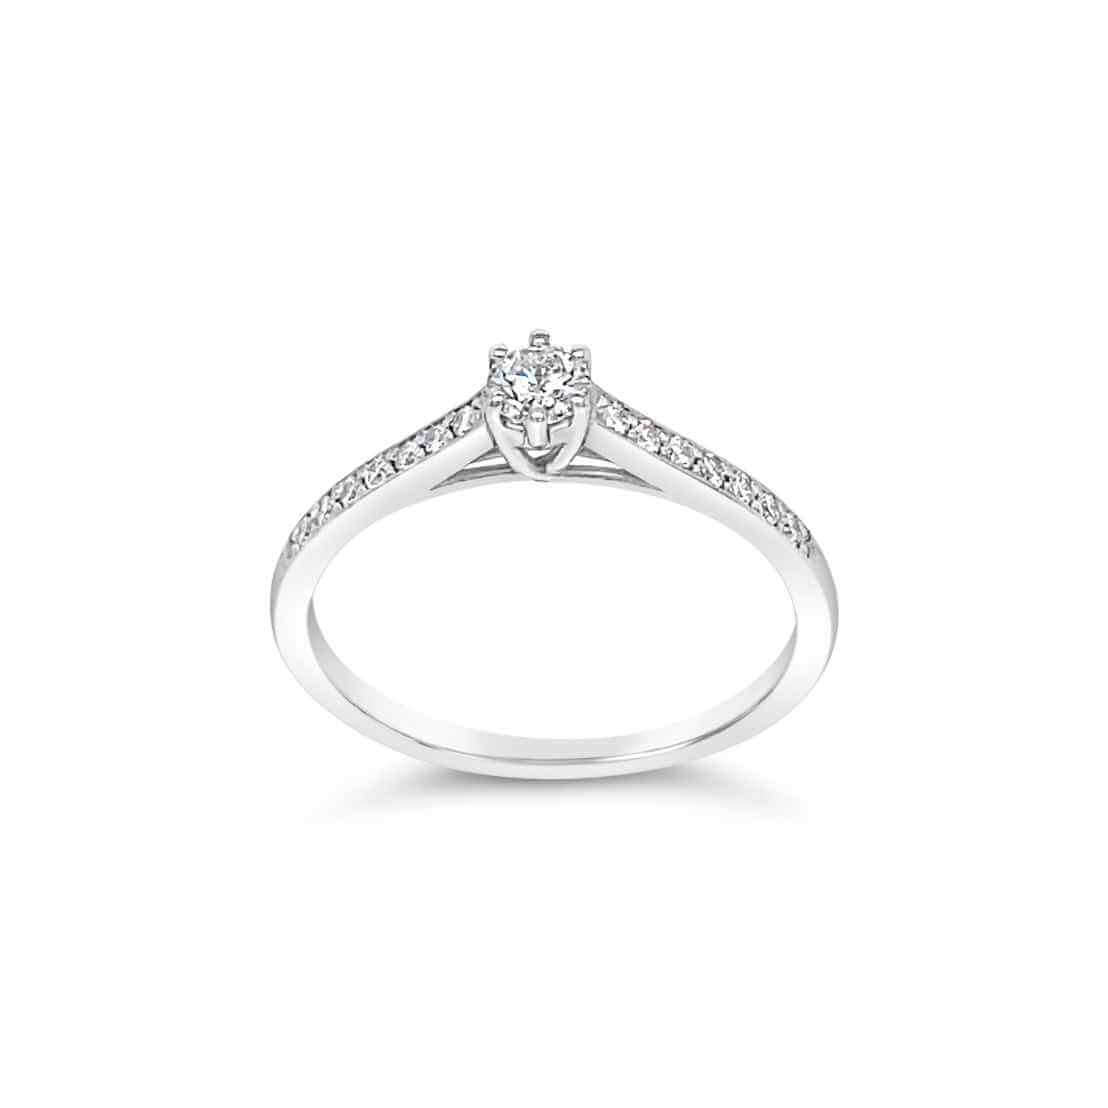 Elegantan verenički prsten